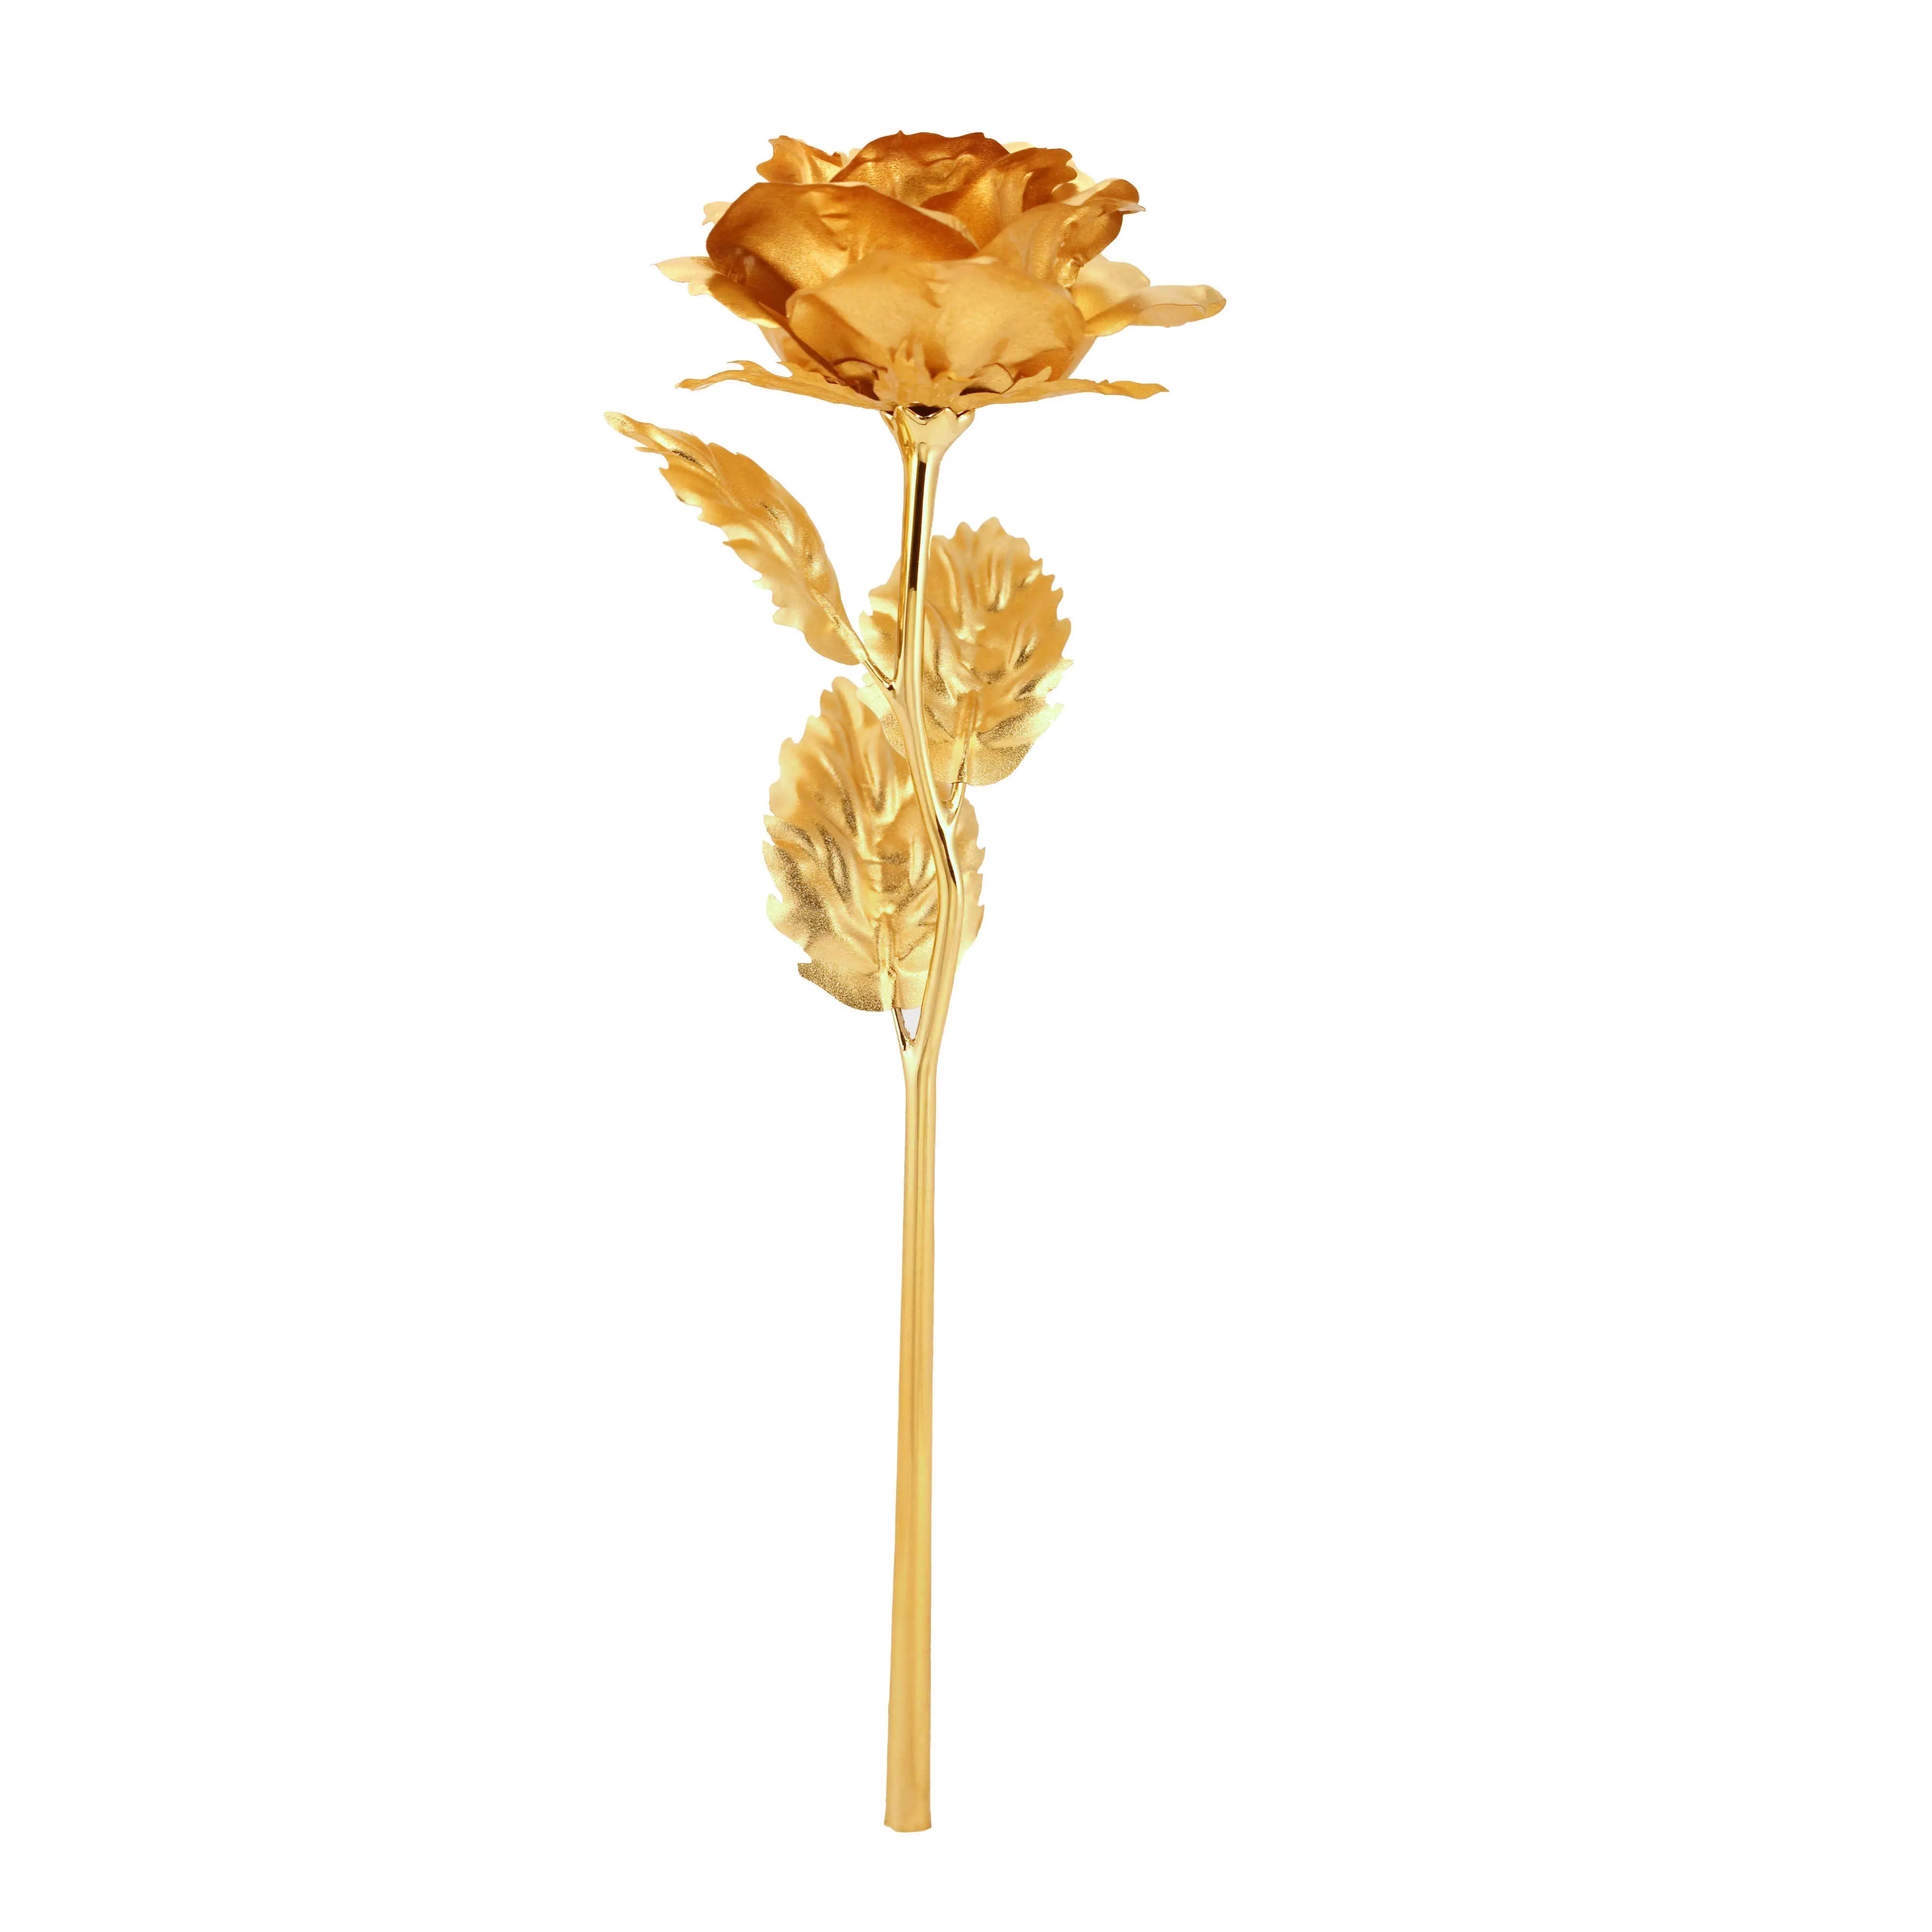 Modern tema çiçekler sevgililer günü için hediye ebedi gül uzun ömürlü gül korunmuş çiçek kutusu için 24k altın kaplama